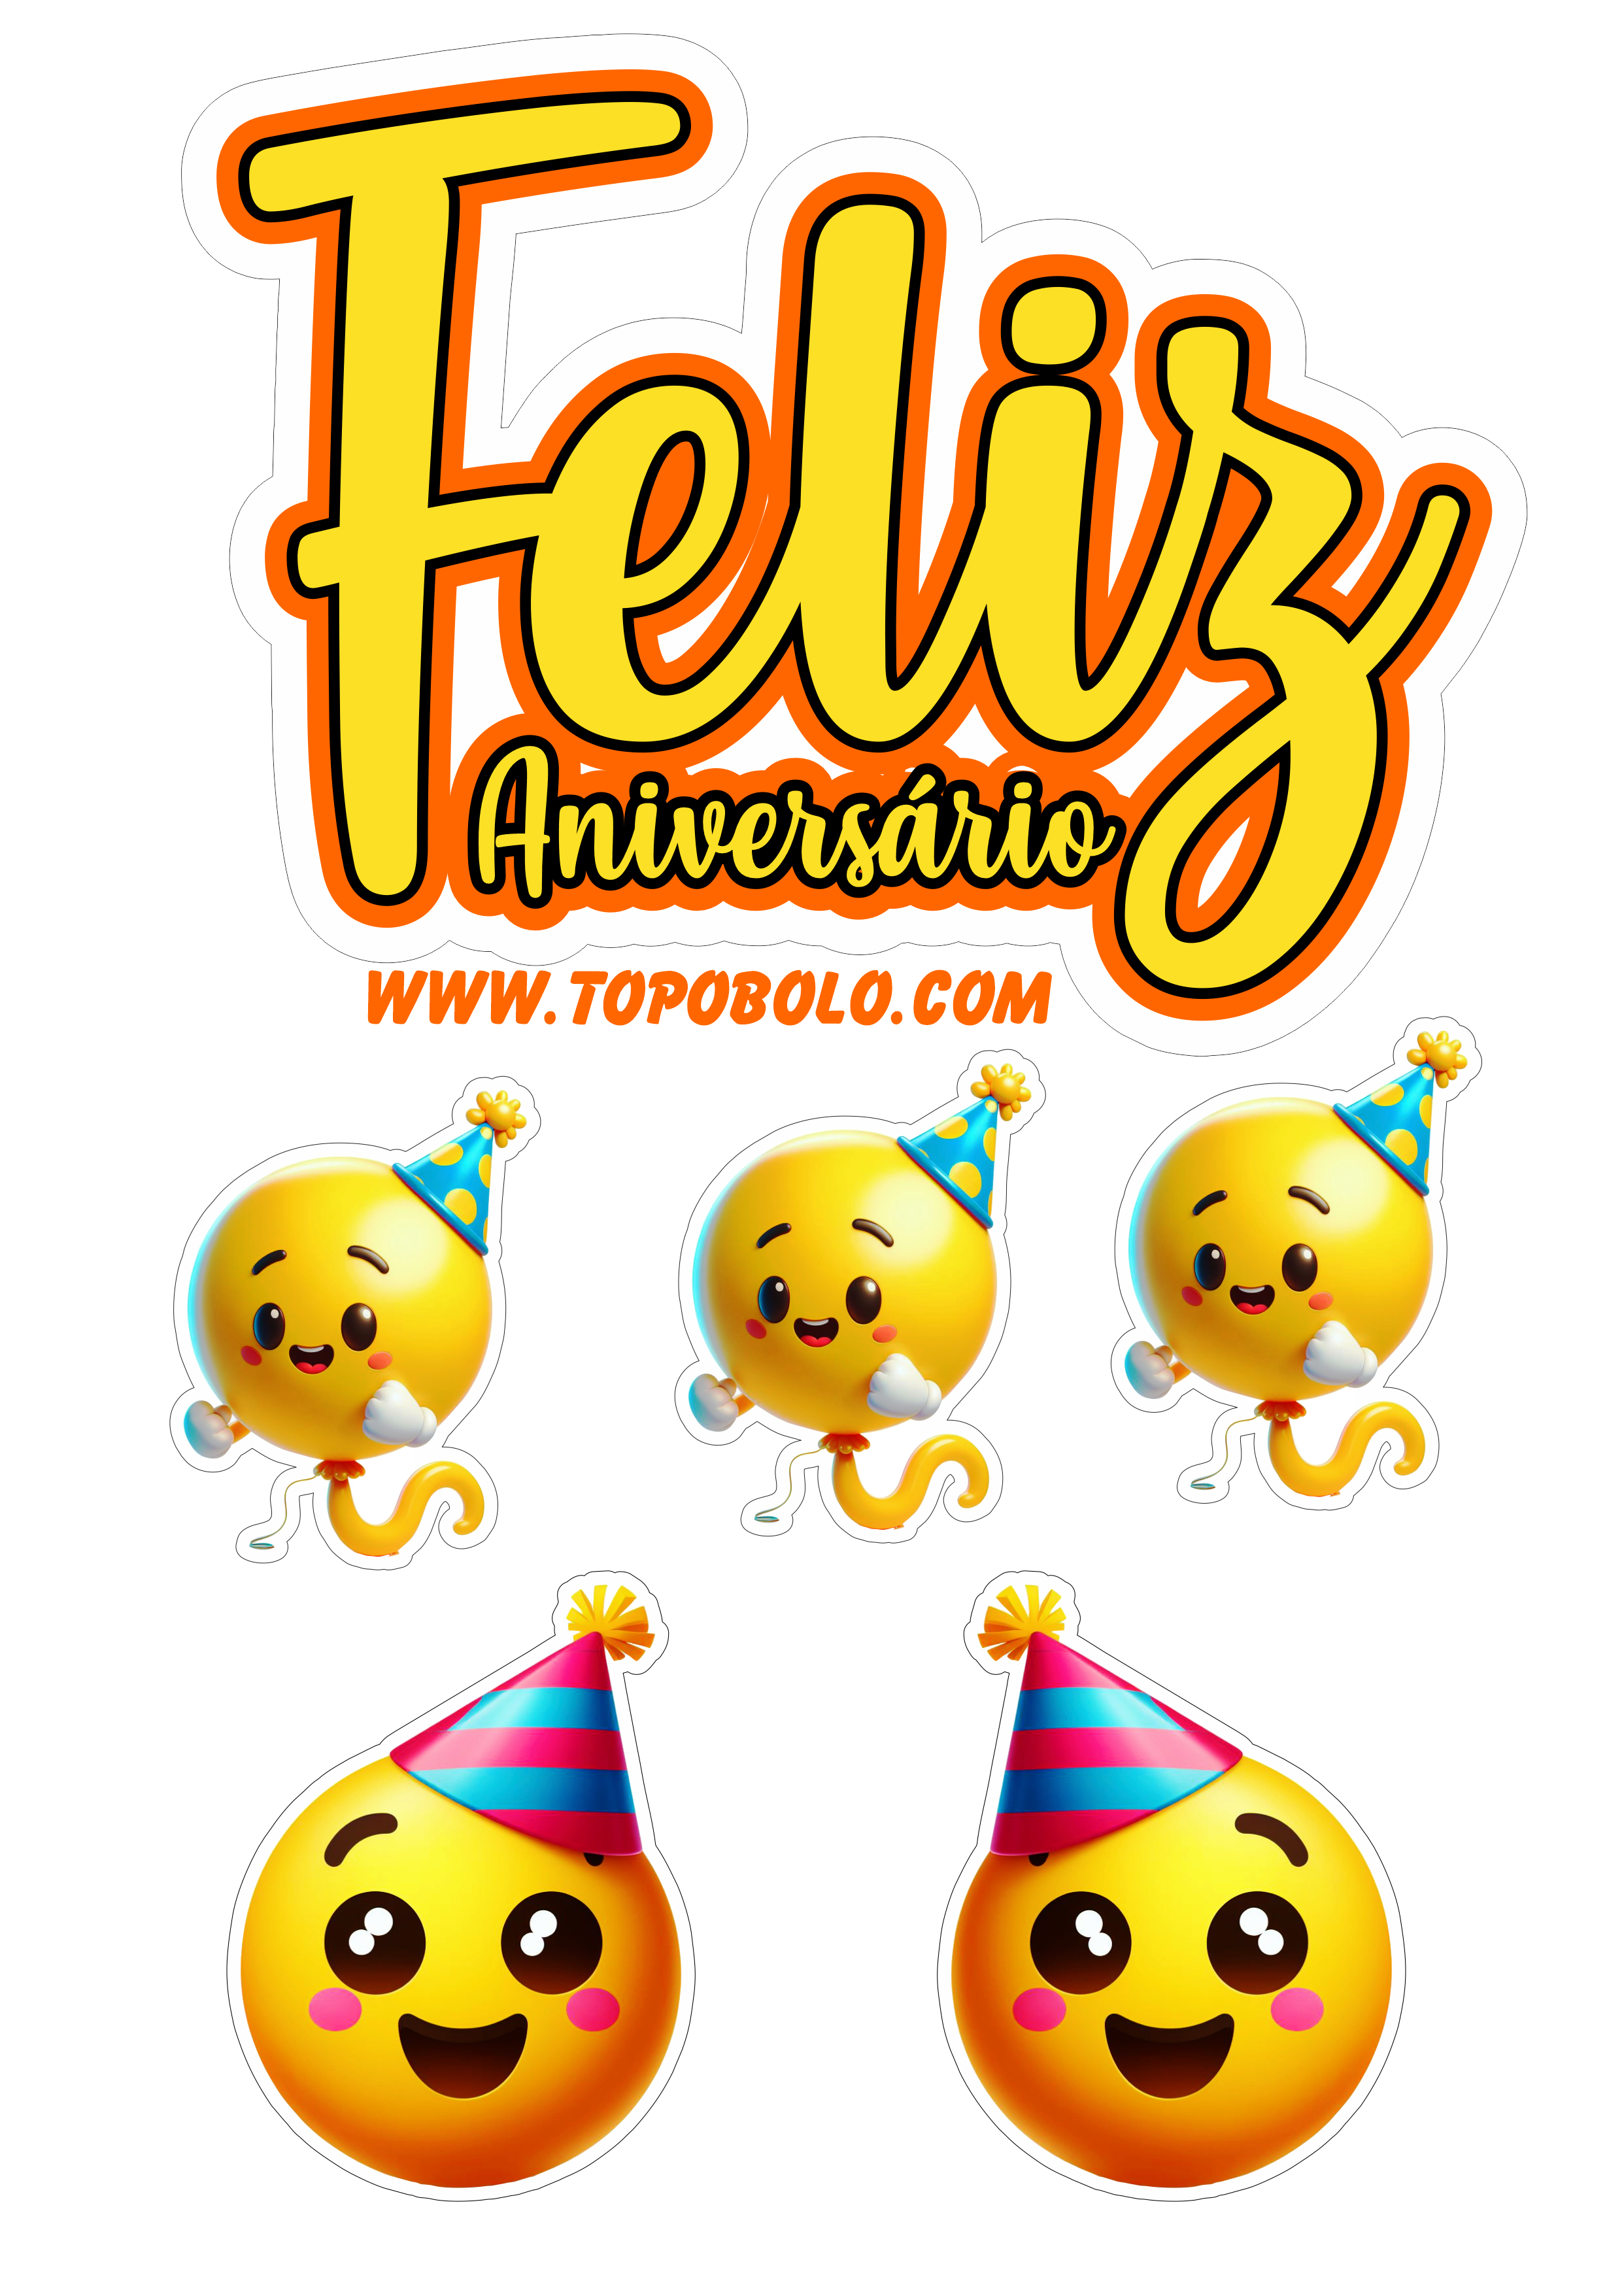 Topo de bolo feliz aniversário emojis engraçados festa pronta png